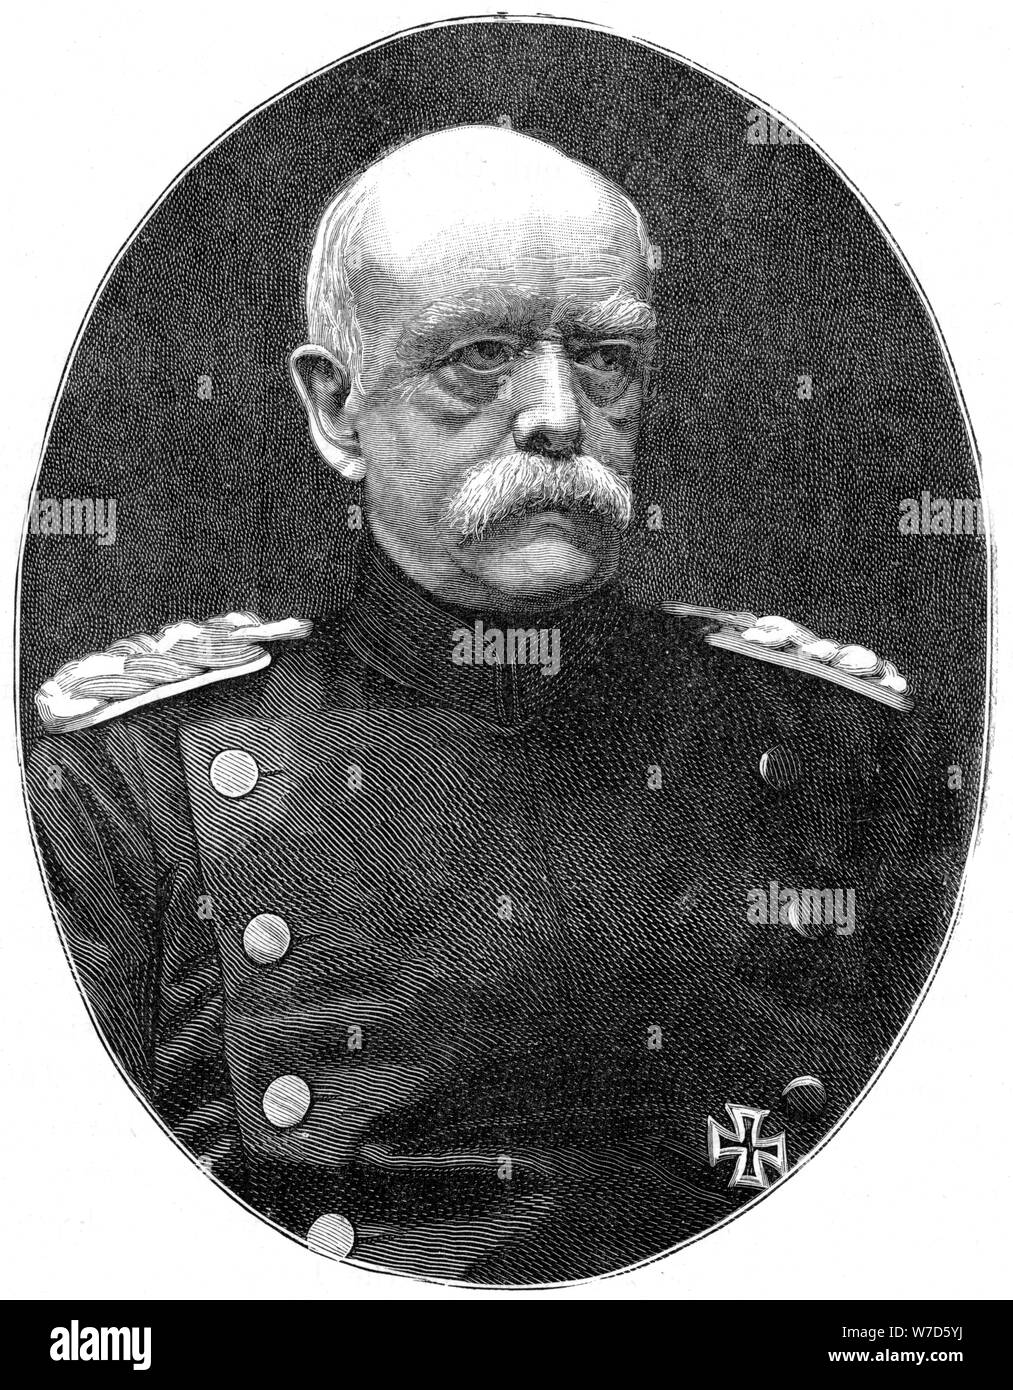 Otto von Bismark, 19th century German statesman, (1900).Artist: Loescher and Petsch Stock Photo